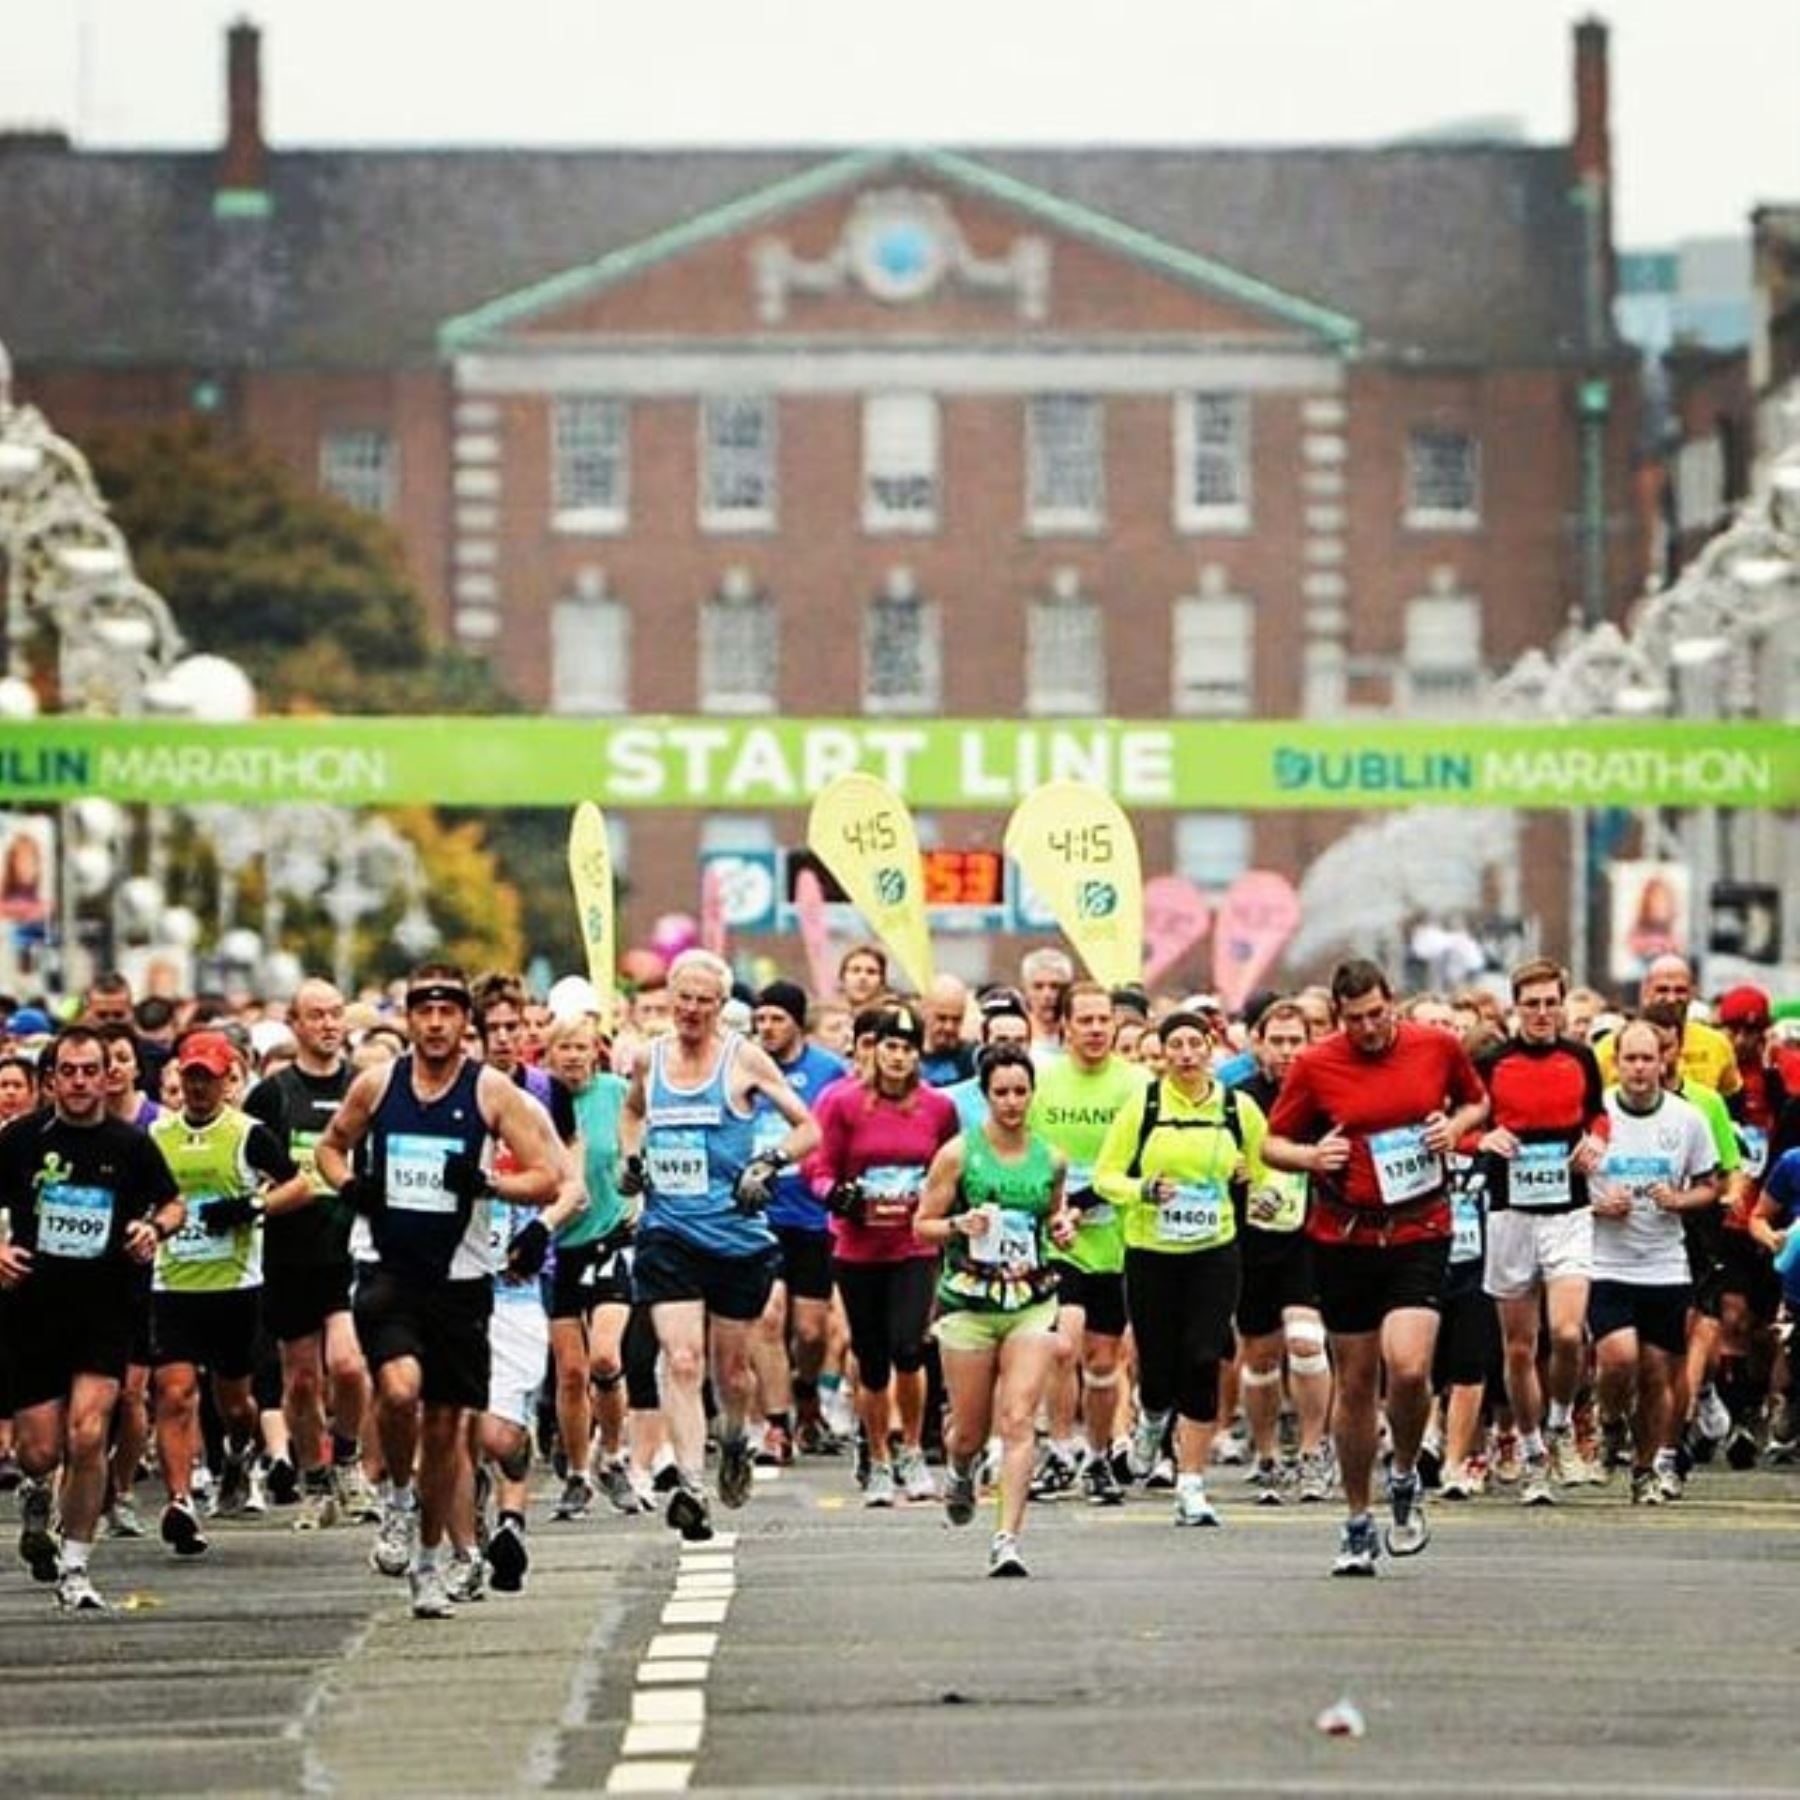 El maratón de Dublín 2020, que se iba a realizar el 25 de octubre,  fue cancelado el martes debido a la pandemia de coronavirus,